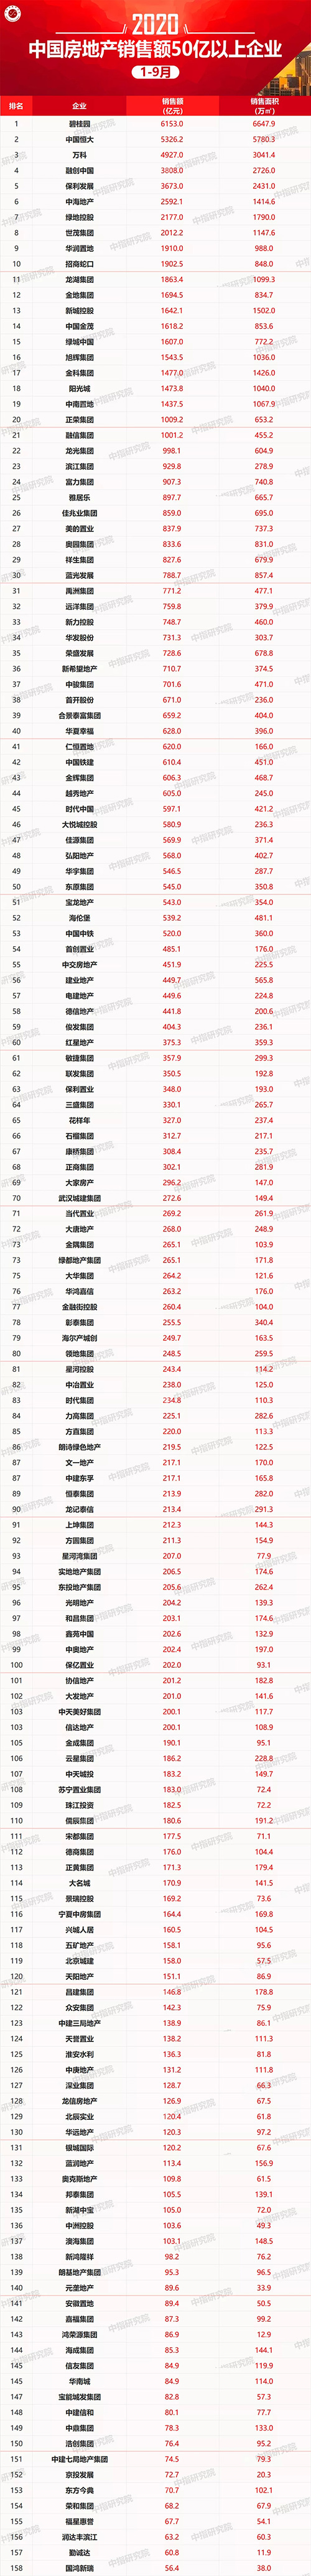 2020年1-9月中国房地产企业销售业绩100